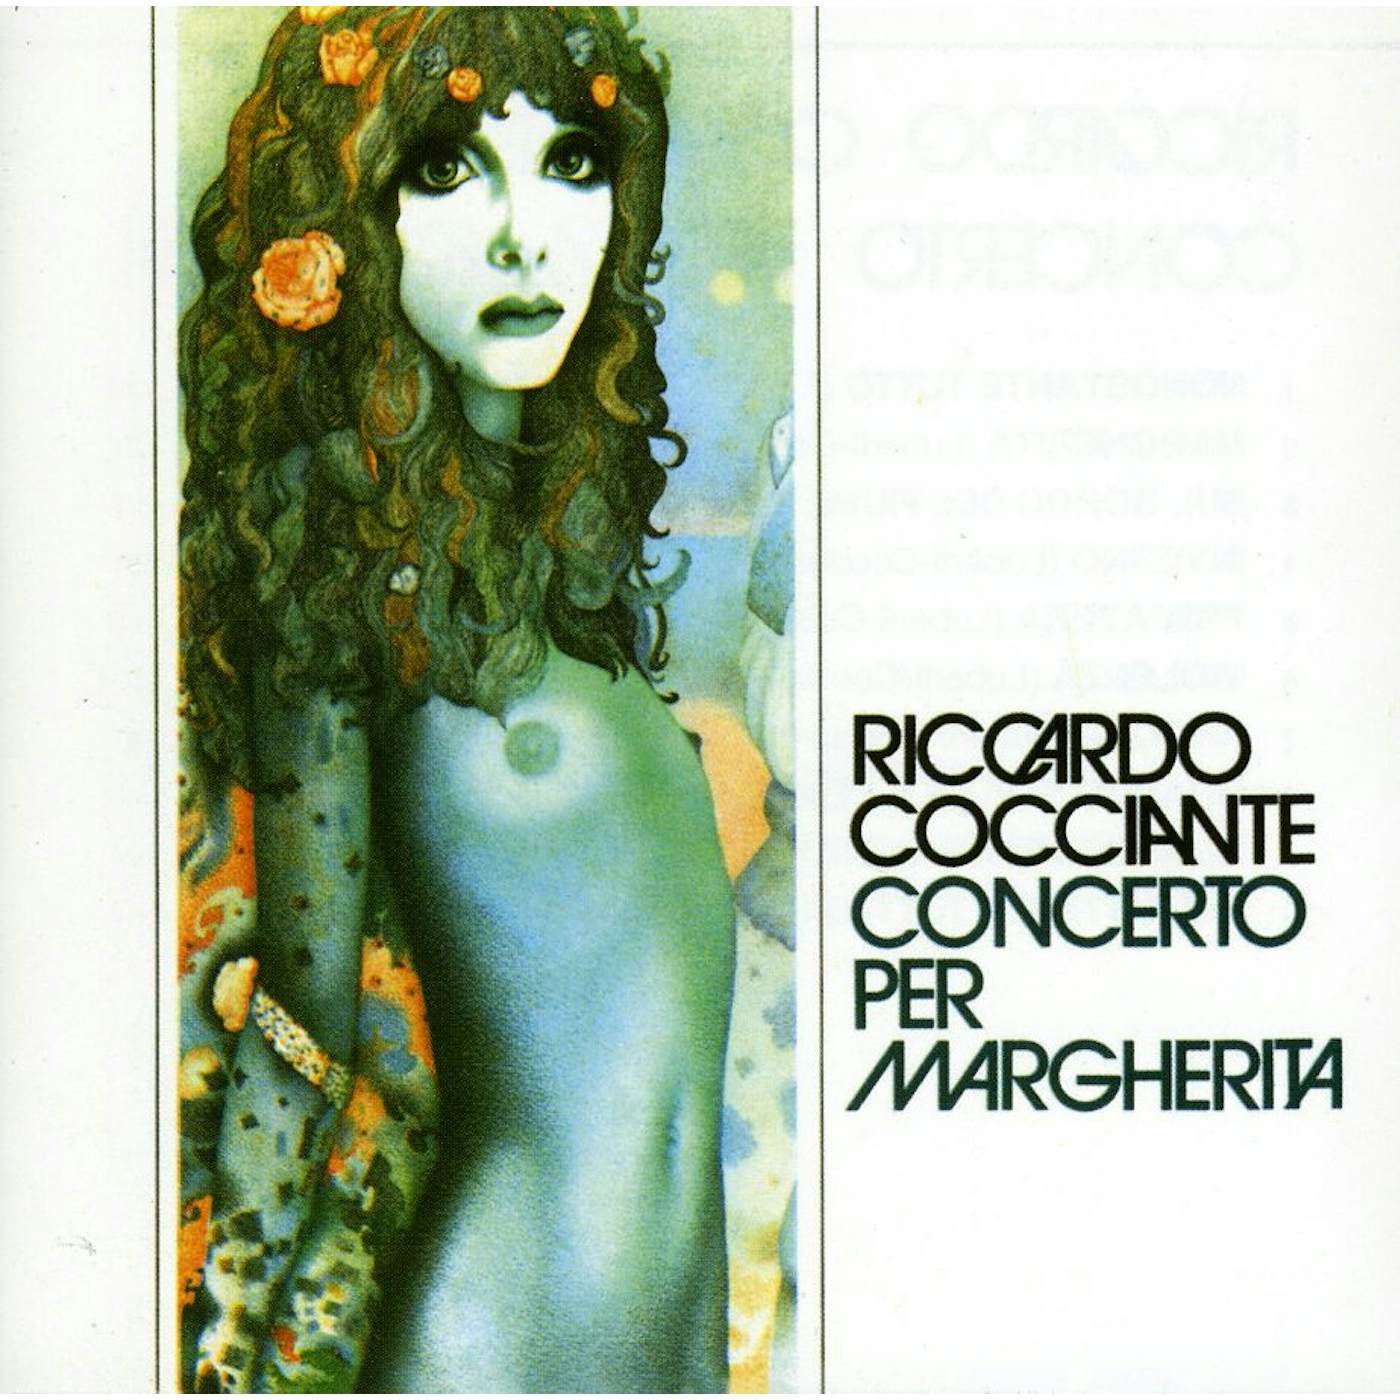 Riccardo Cocciante CONCERTO PER MARGHERITA CD